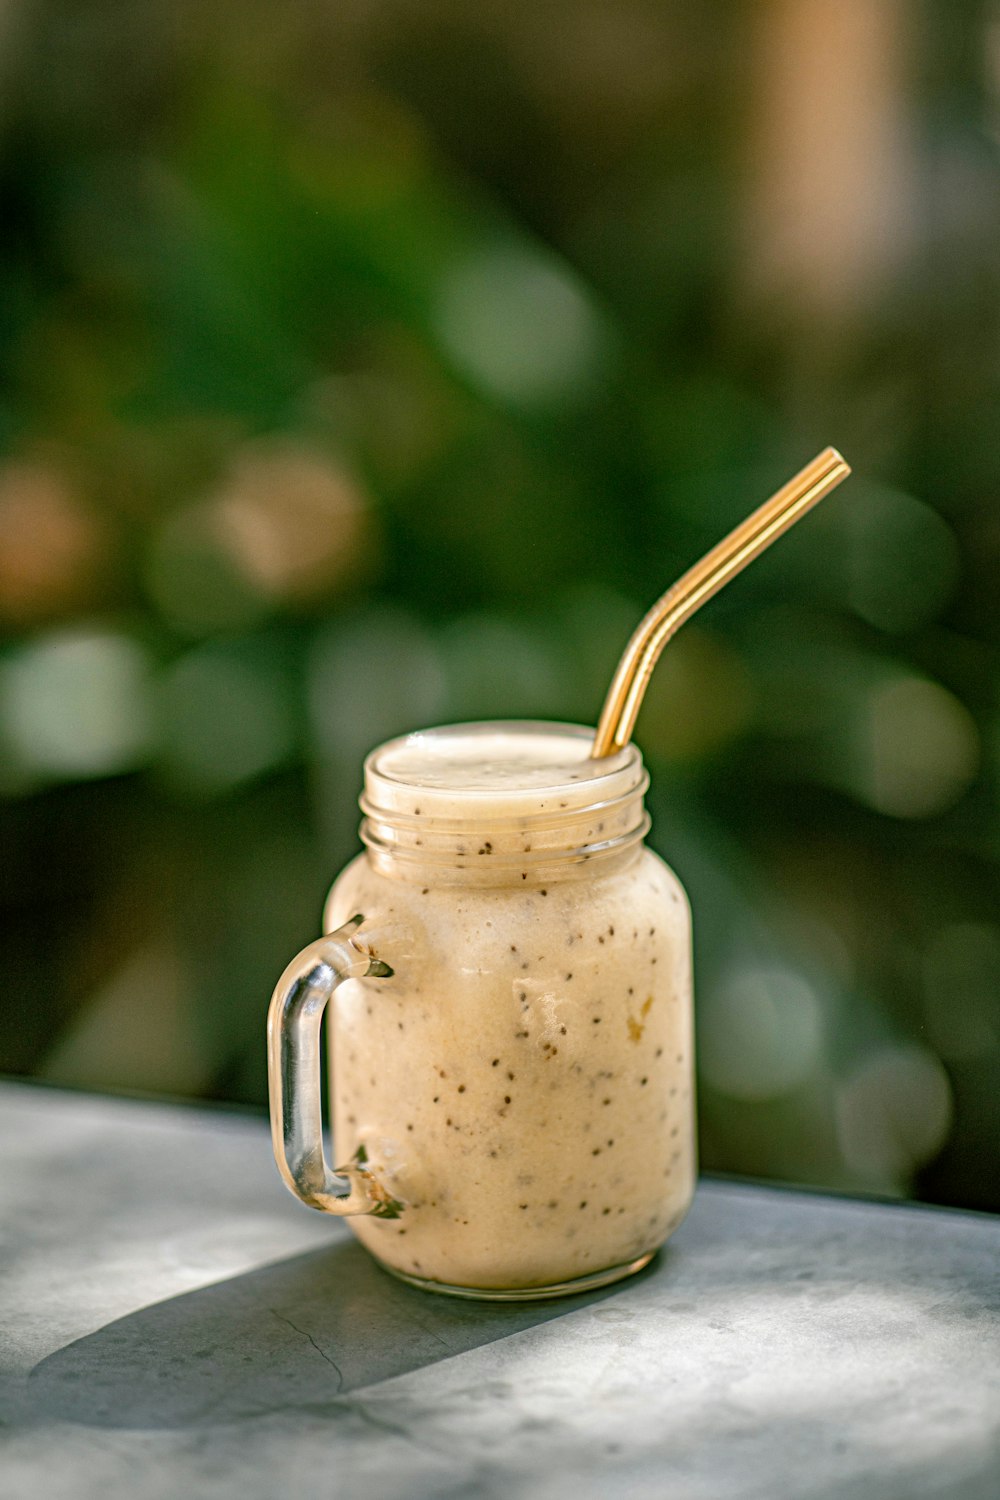 a glass jar with a straw